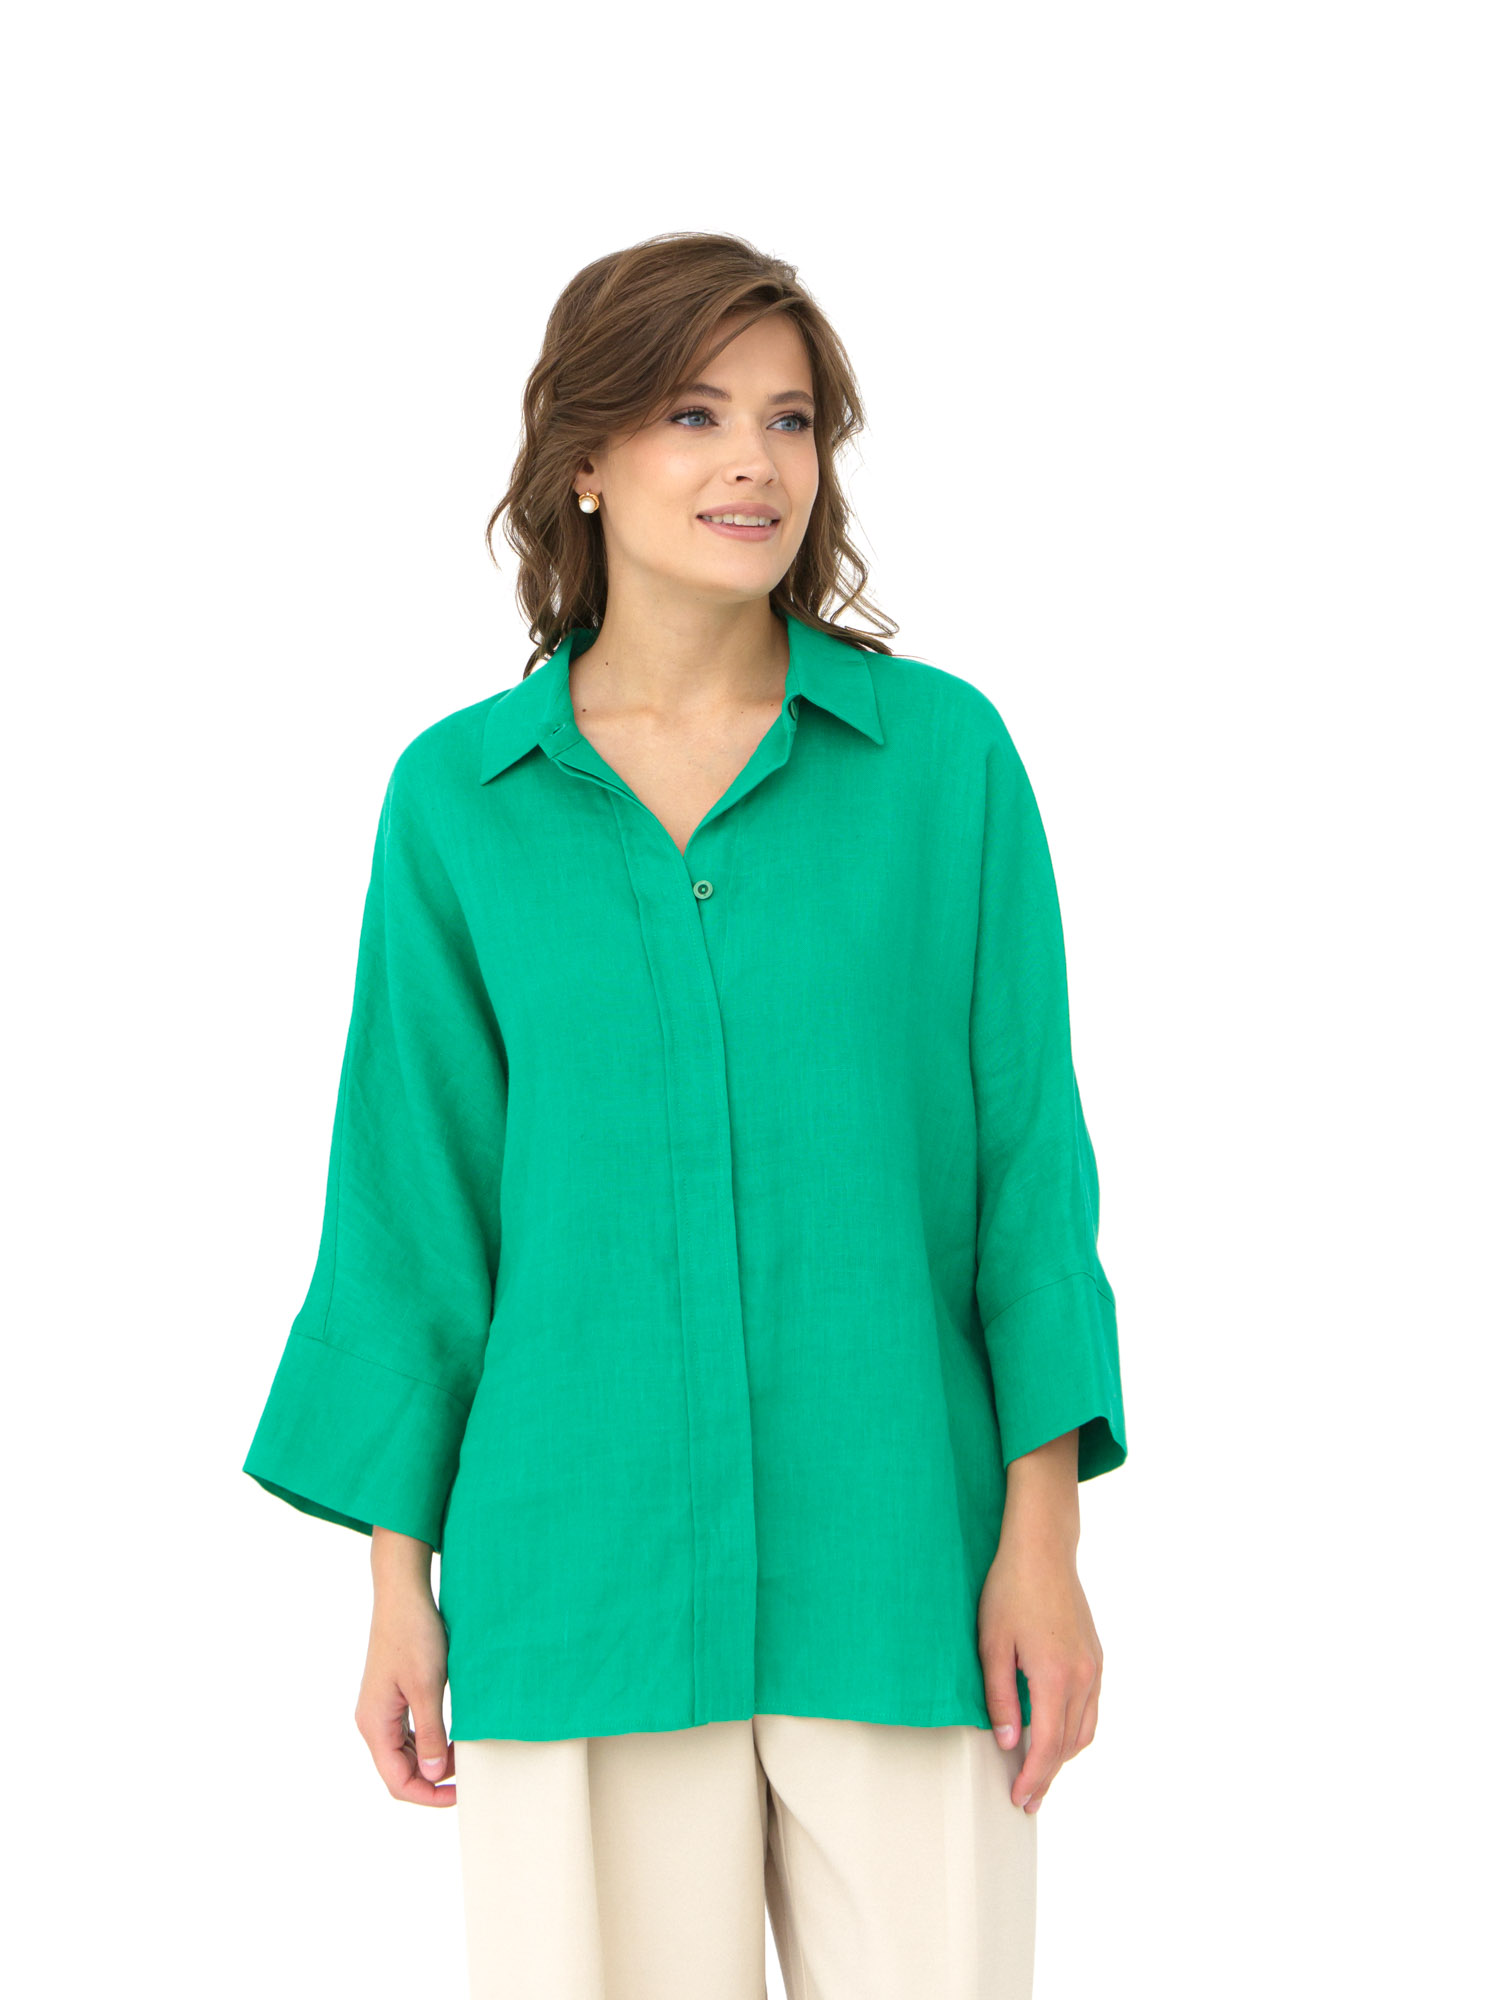 Блузка женская КЛ-7728-ИЛ23 светло-зеленый 44 ELECTRA STYLE, цвет светло-зелёный, размер 44 - фото 1